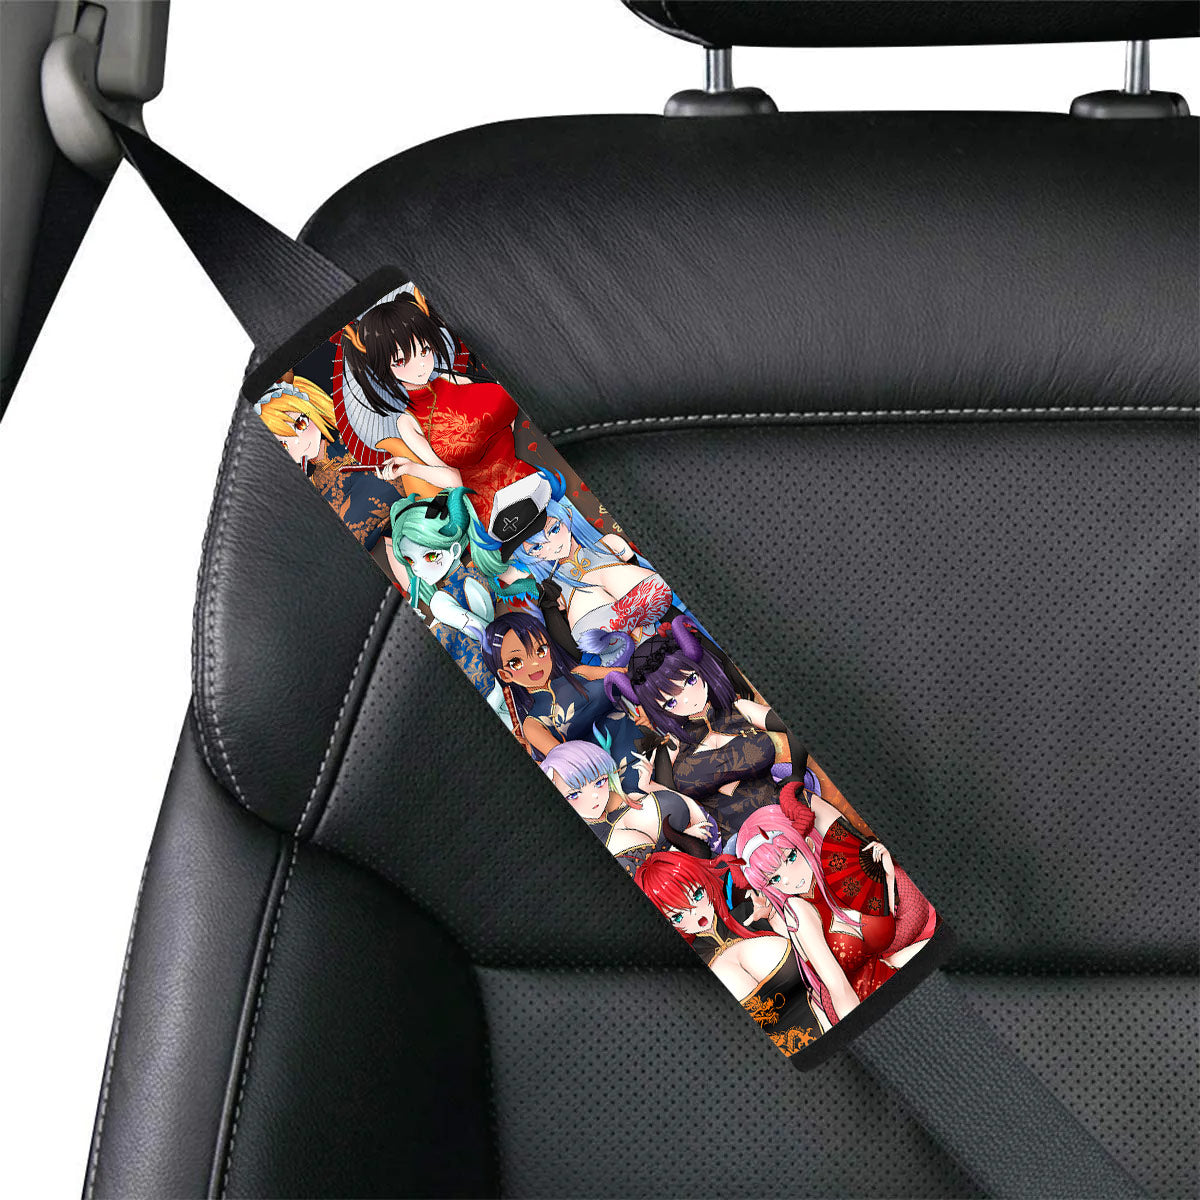 Dragon Waifus Seat Belt Covers